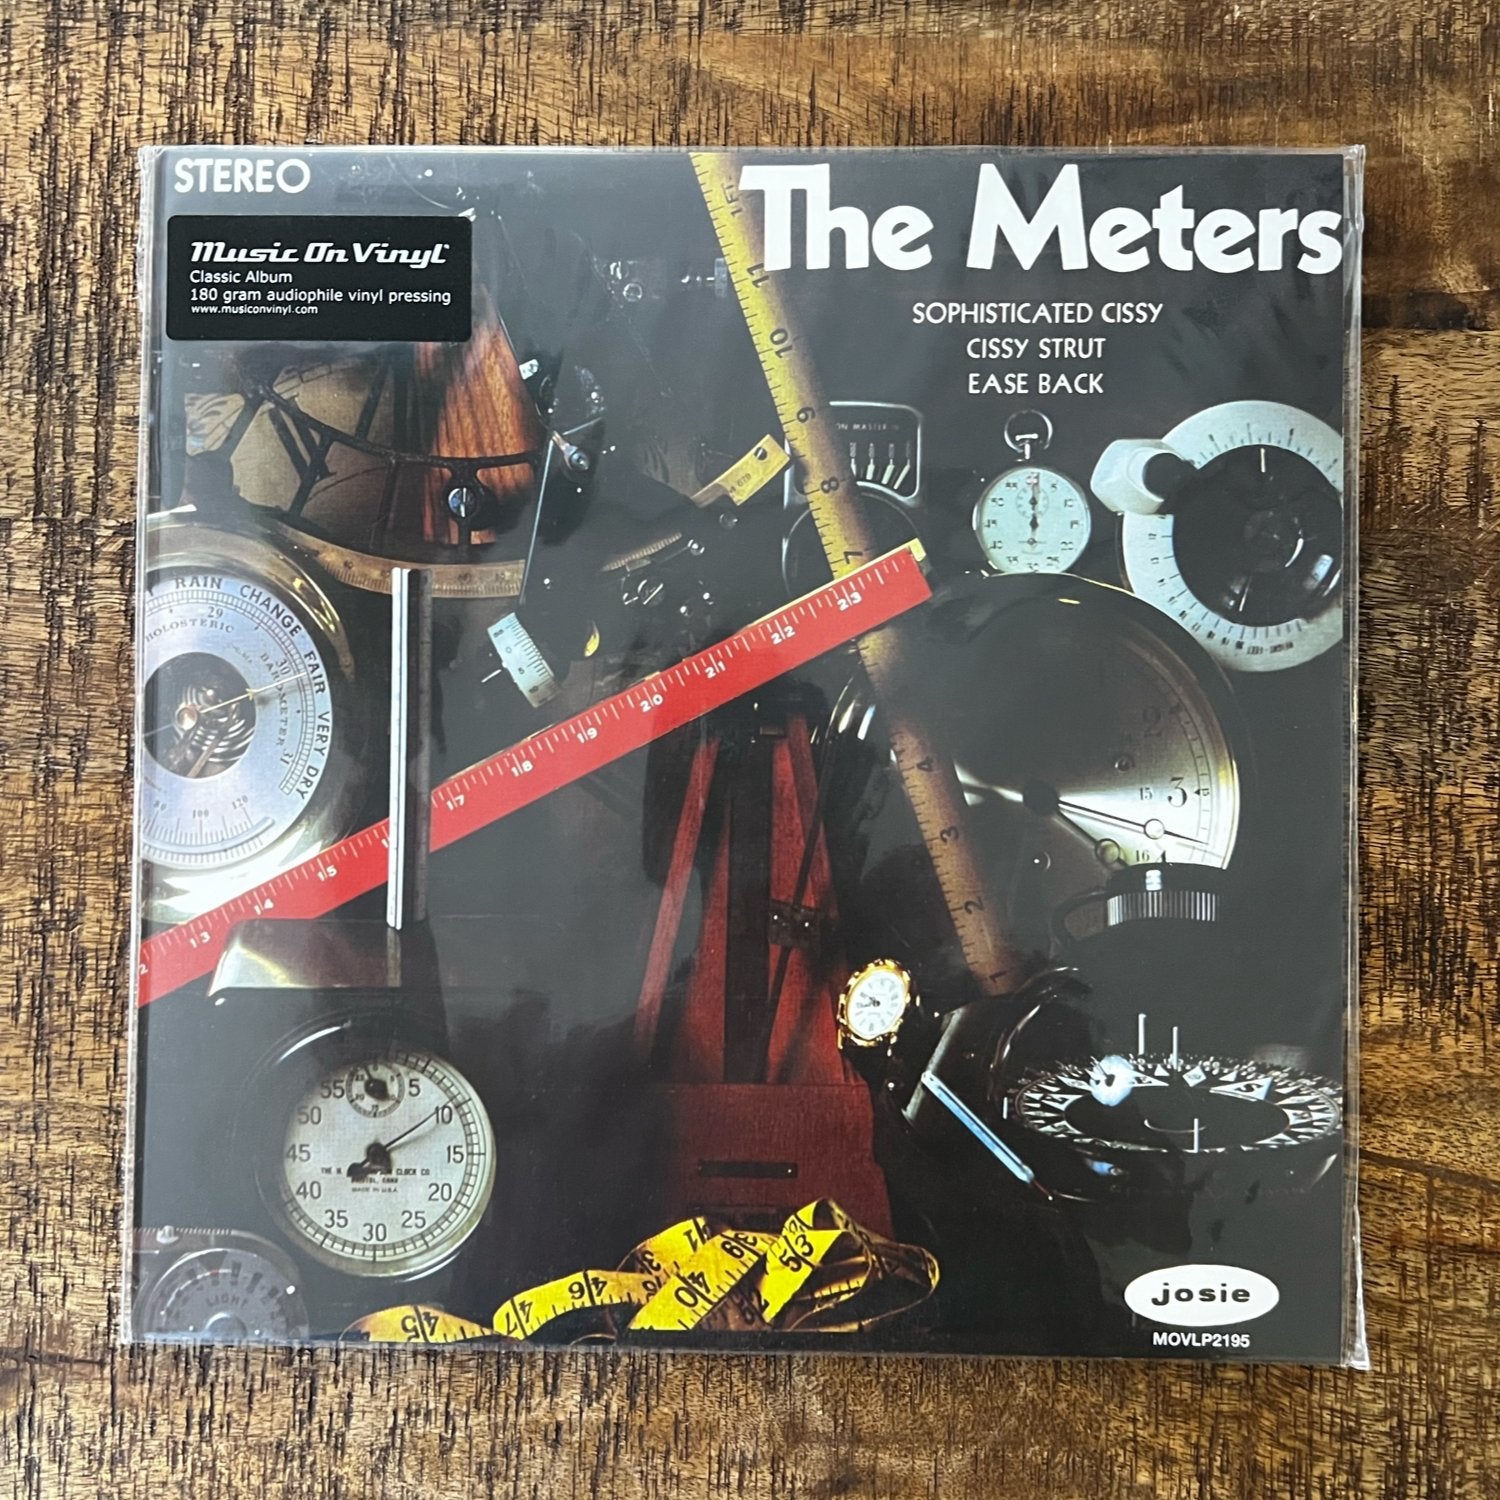 The Meters, The Meters (debut album) - Dirty Coast Press